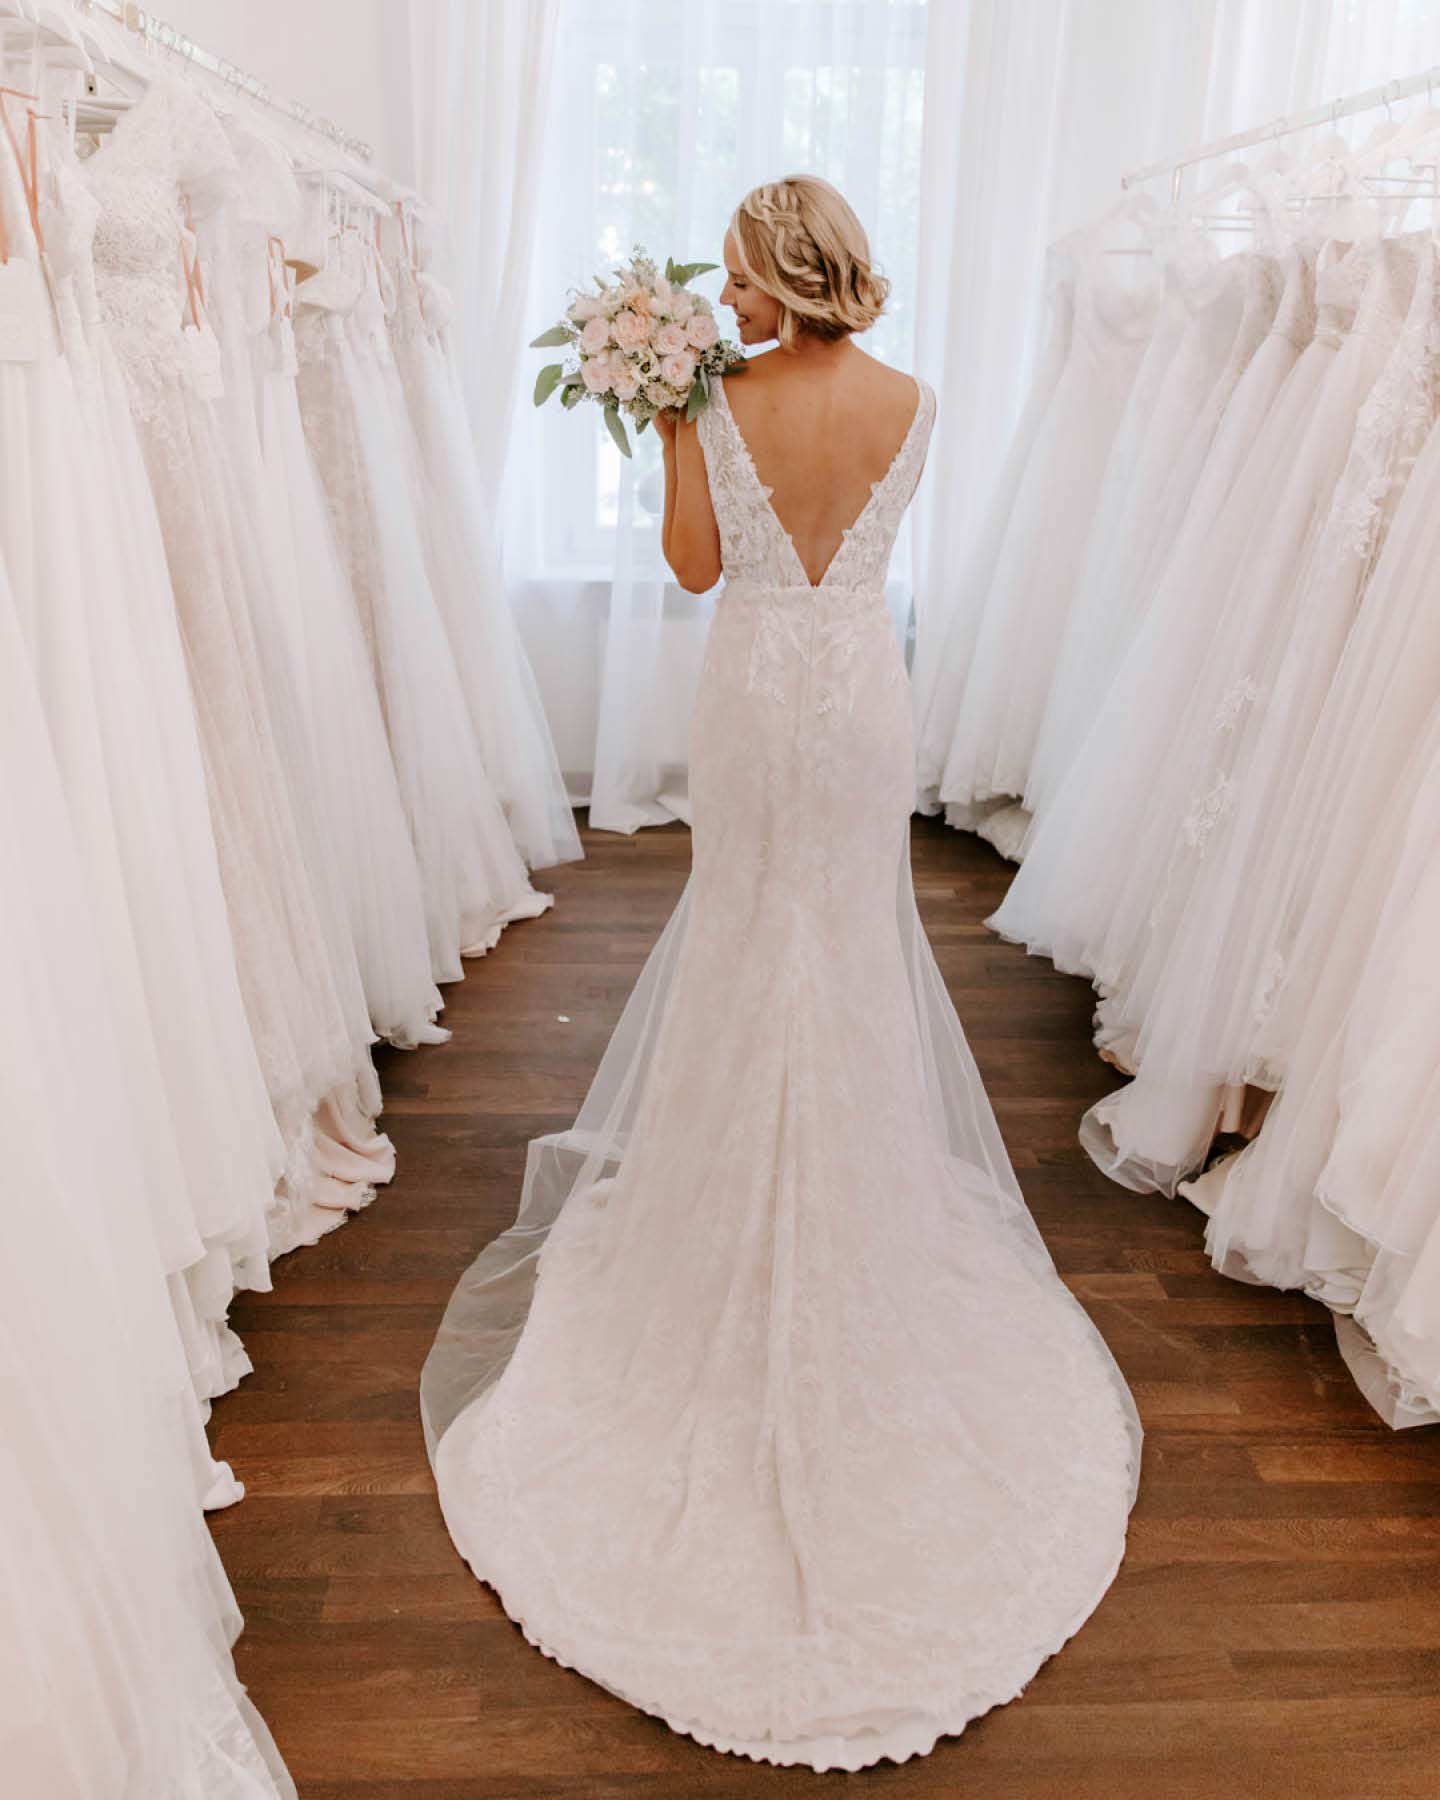 Braut steht im Brautmodenladen und zeigt den tiefen Rückausschnitt ihres Brautkleides.